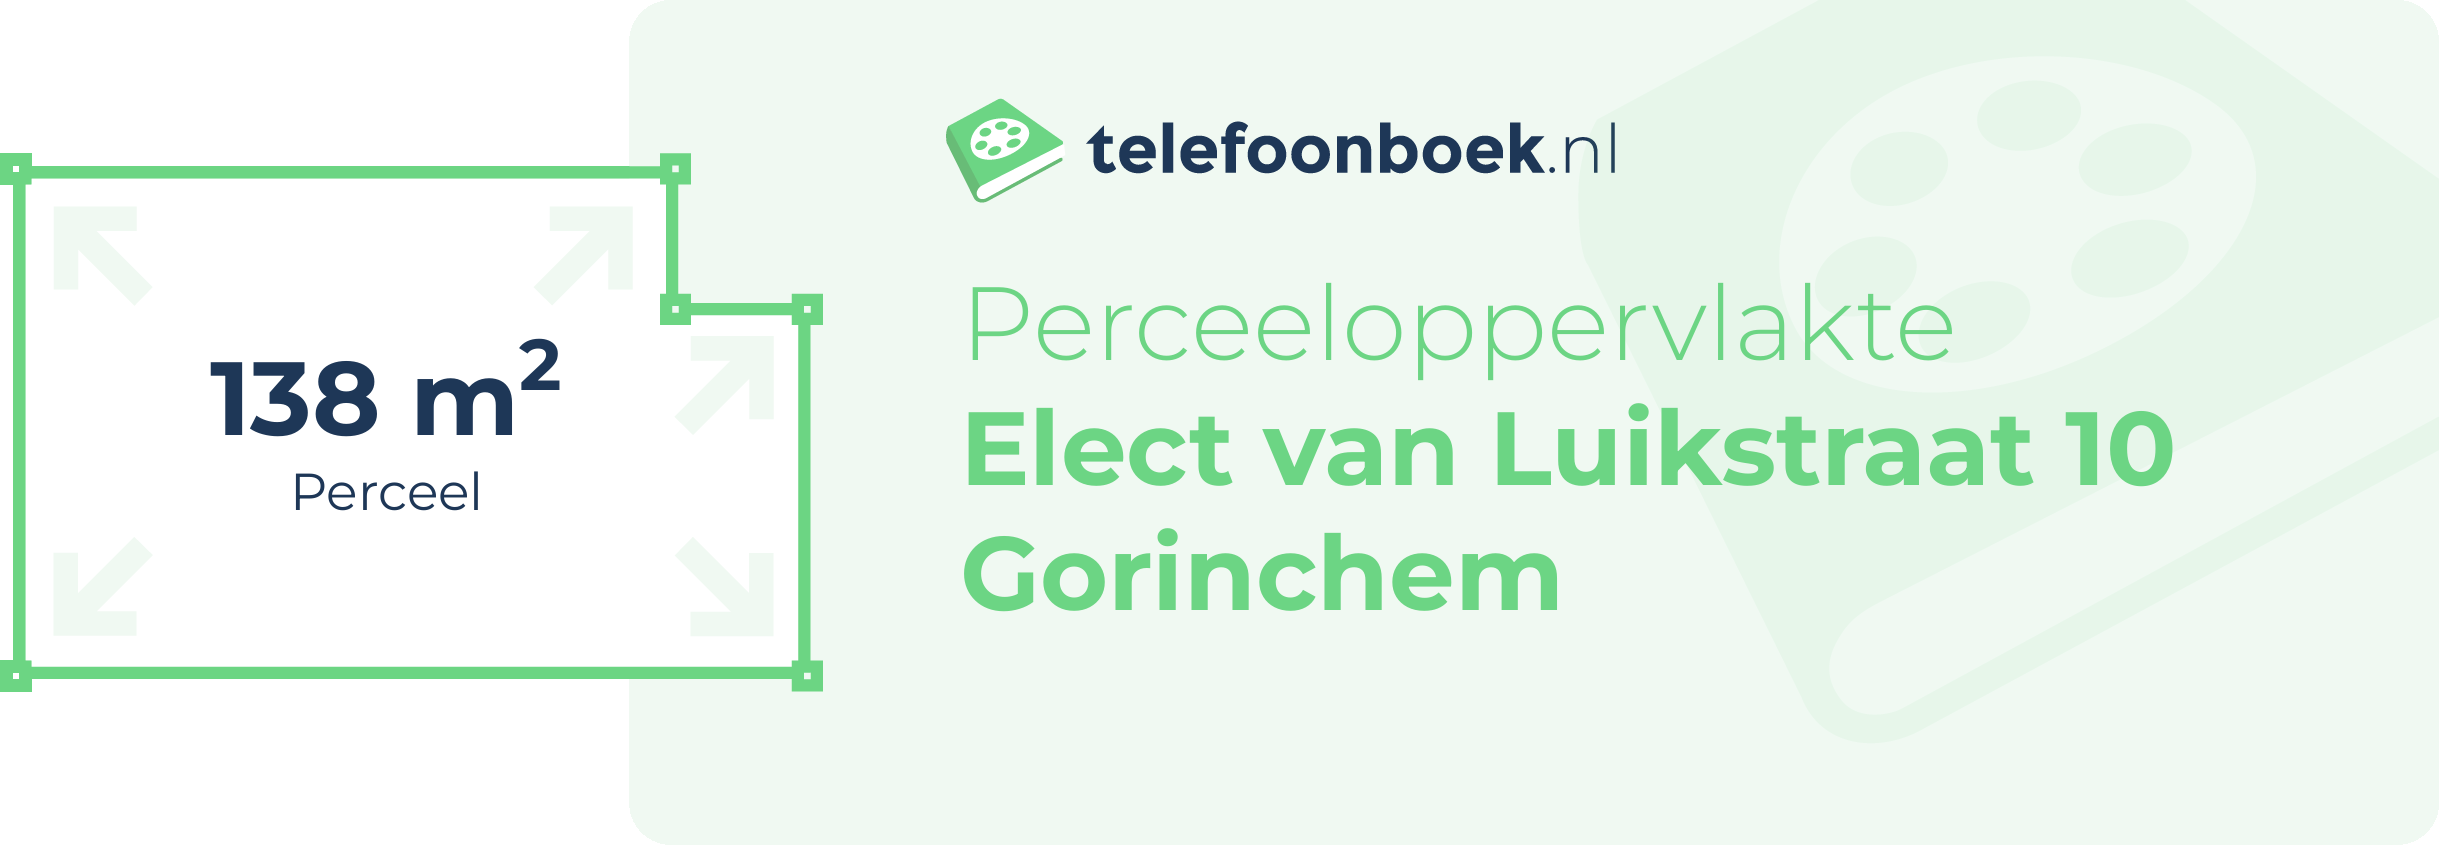 Perceeloppervlakte Elect Van Luikstraat 10 Gorinchem